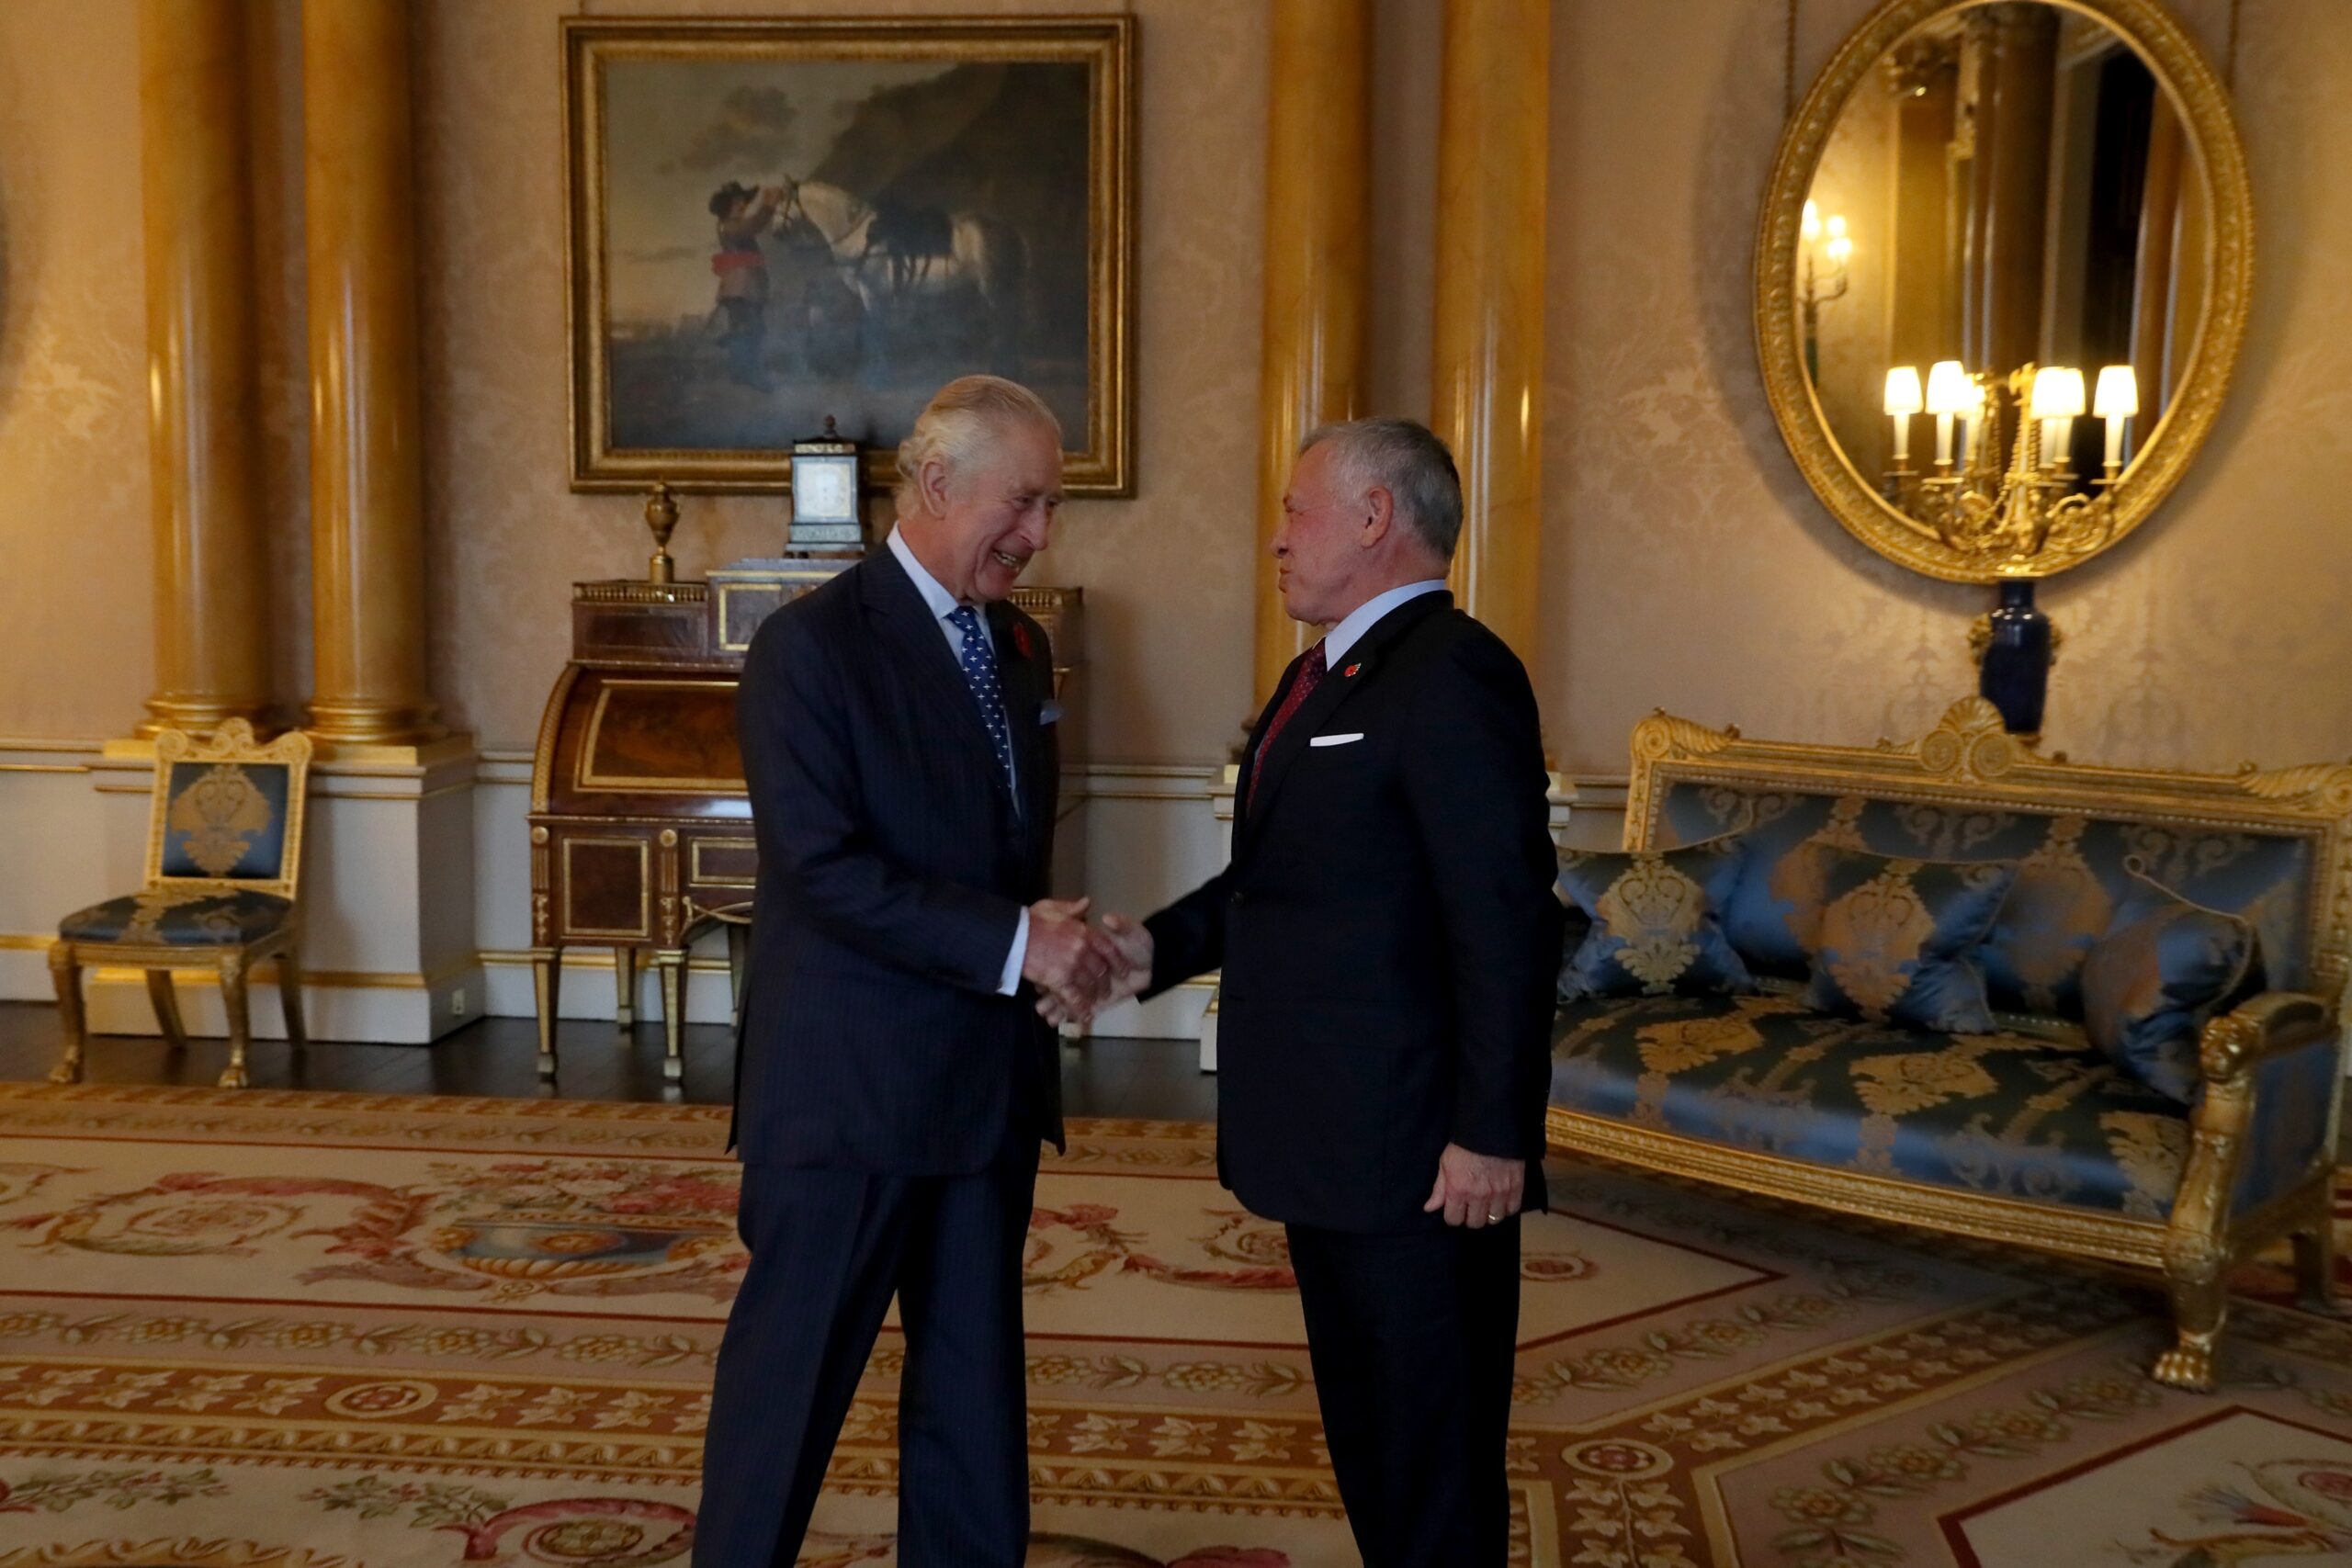 الملك عبدالله يلتقي الملك تشارلز الثالث في لندن - قصر باكنغهام